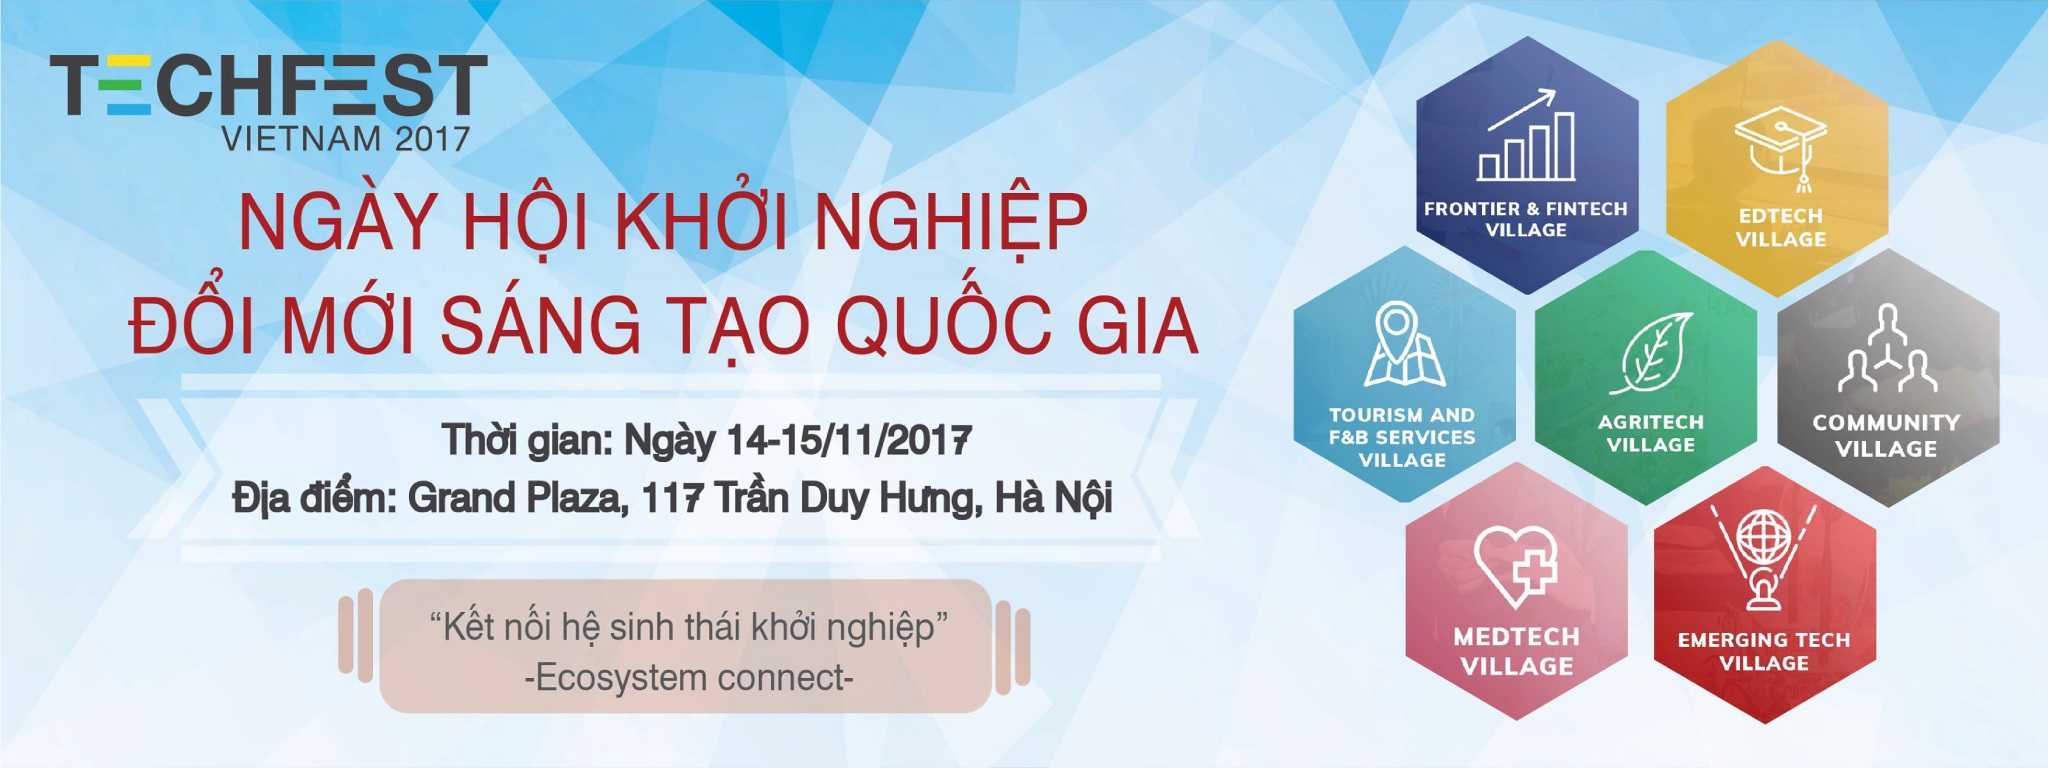 [QC] P.A Việt Nam tham dự Techfest 2017 với tư cách diễn giả và nhà tài trợ